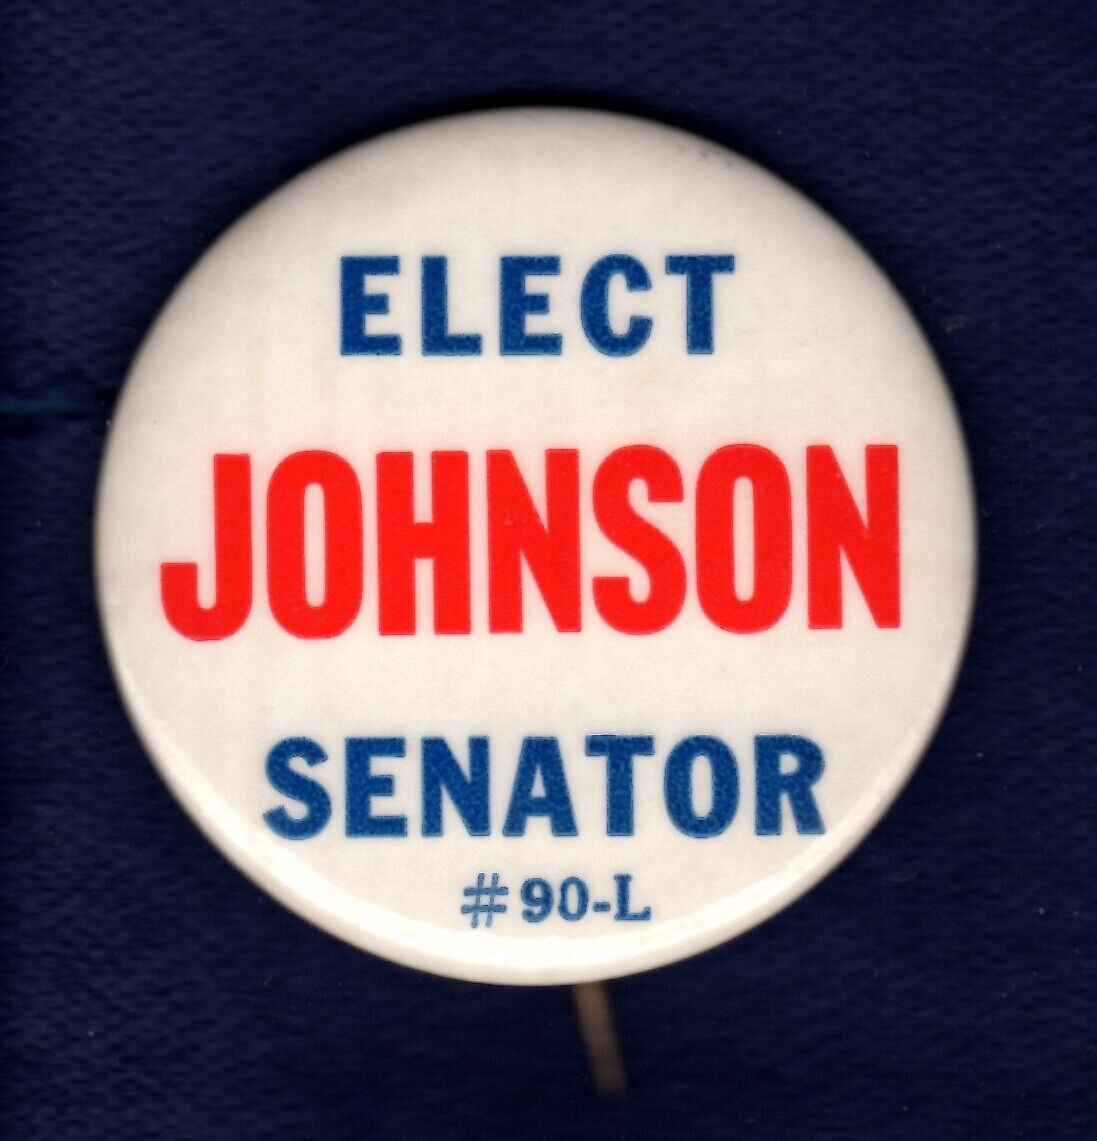 ELECT JOHNSON SENATOR c.1950s-1960s UNION POLITICAL CAMPAIGN PINBACK BUTTON